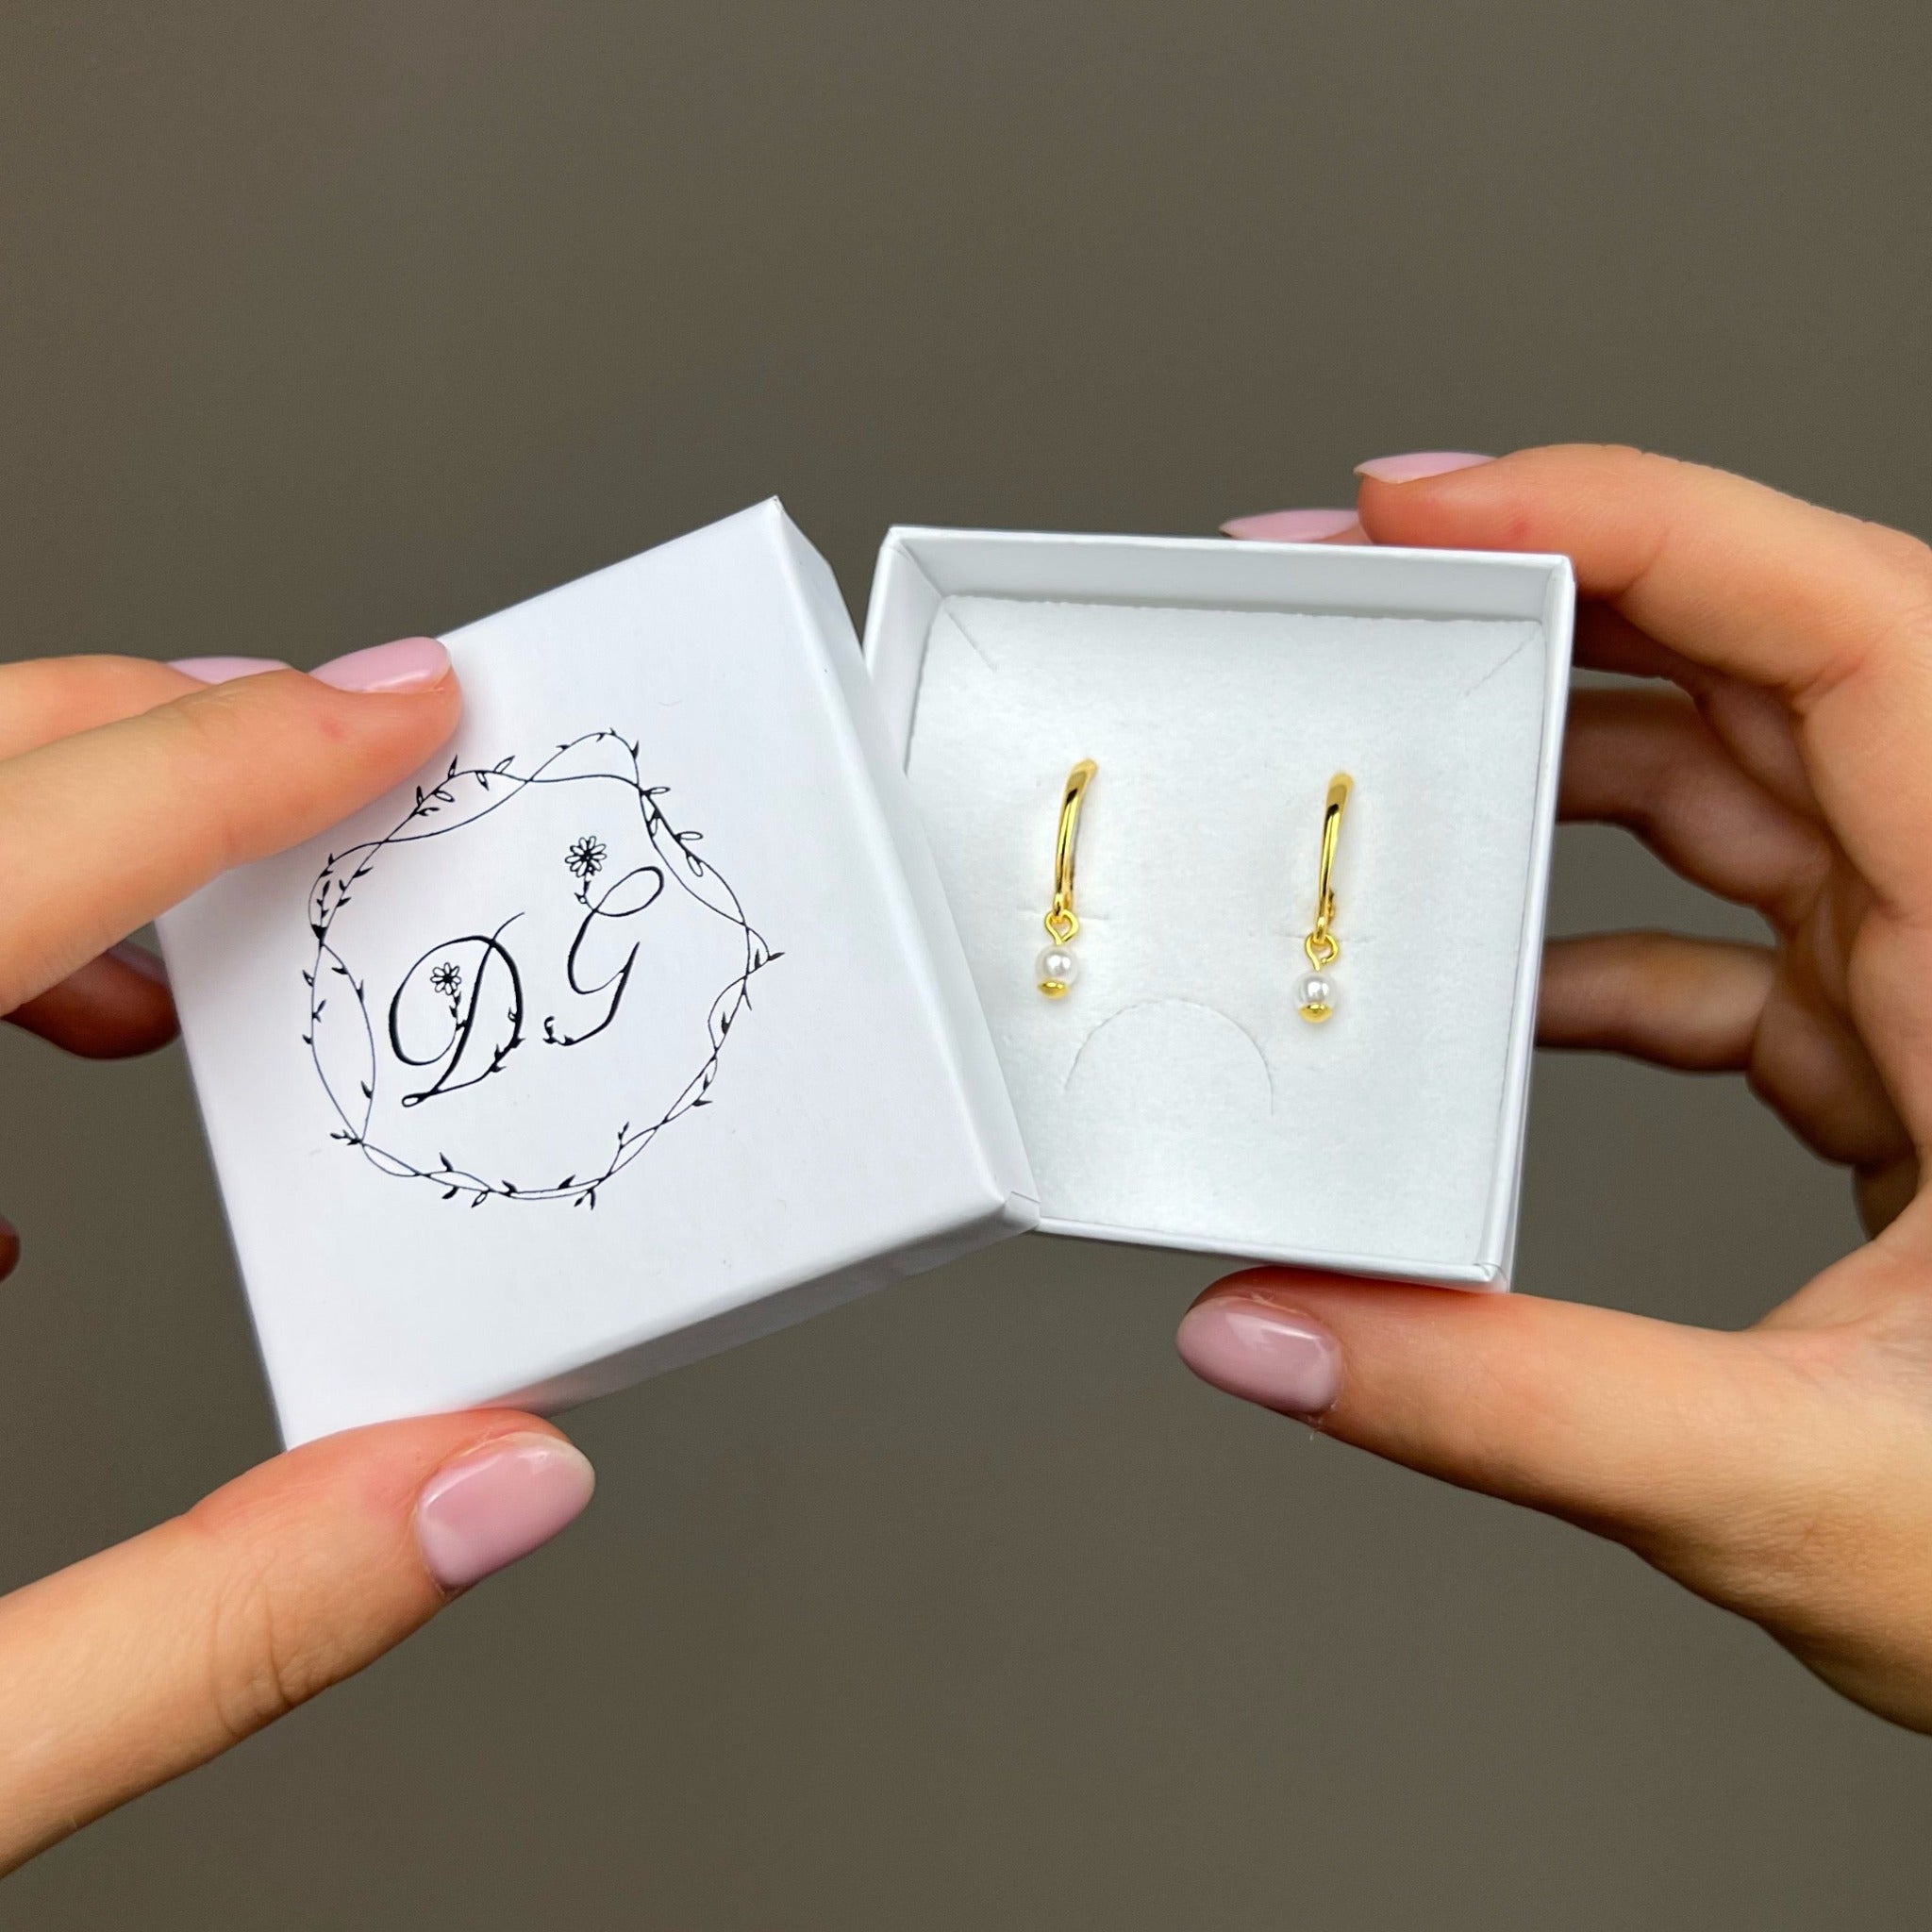 Złote kolczyki wiszące z perłą naturalną w ozdobnym pudełku. Zrobione ze srebra próby 925 pokrytego 24k złotem